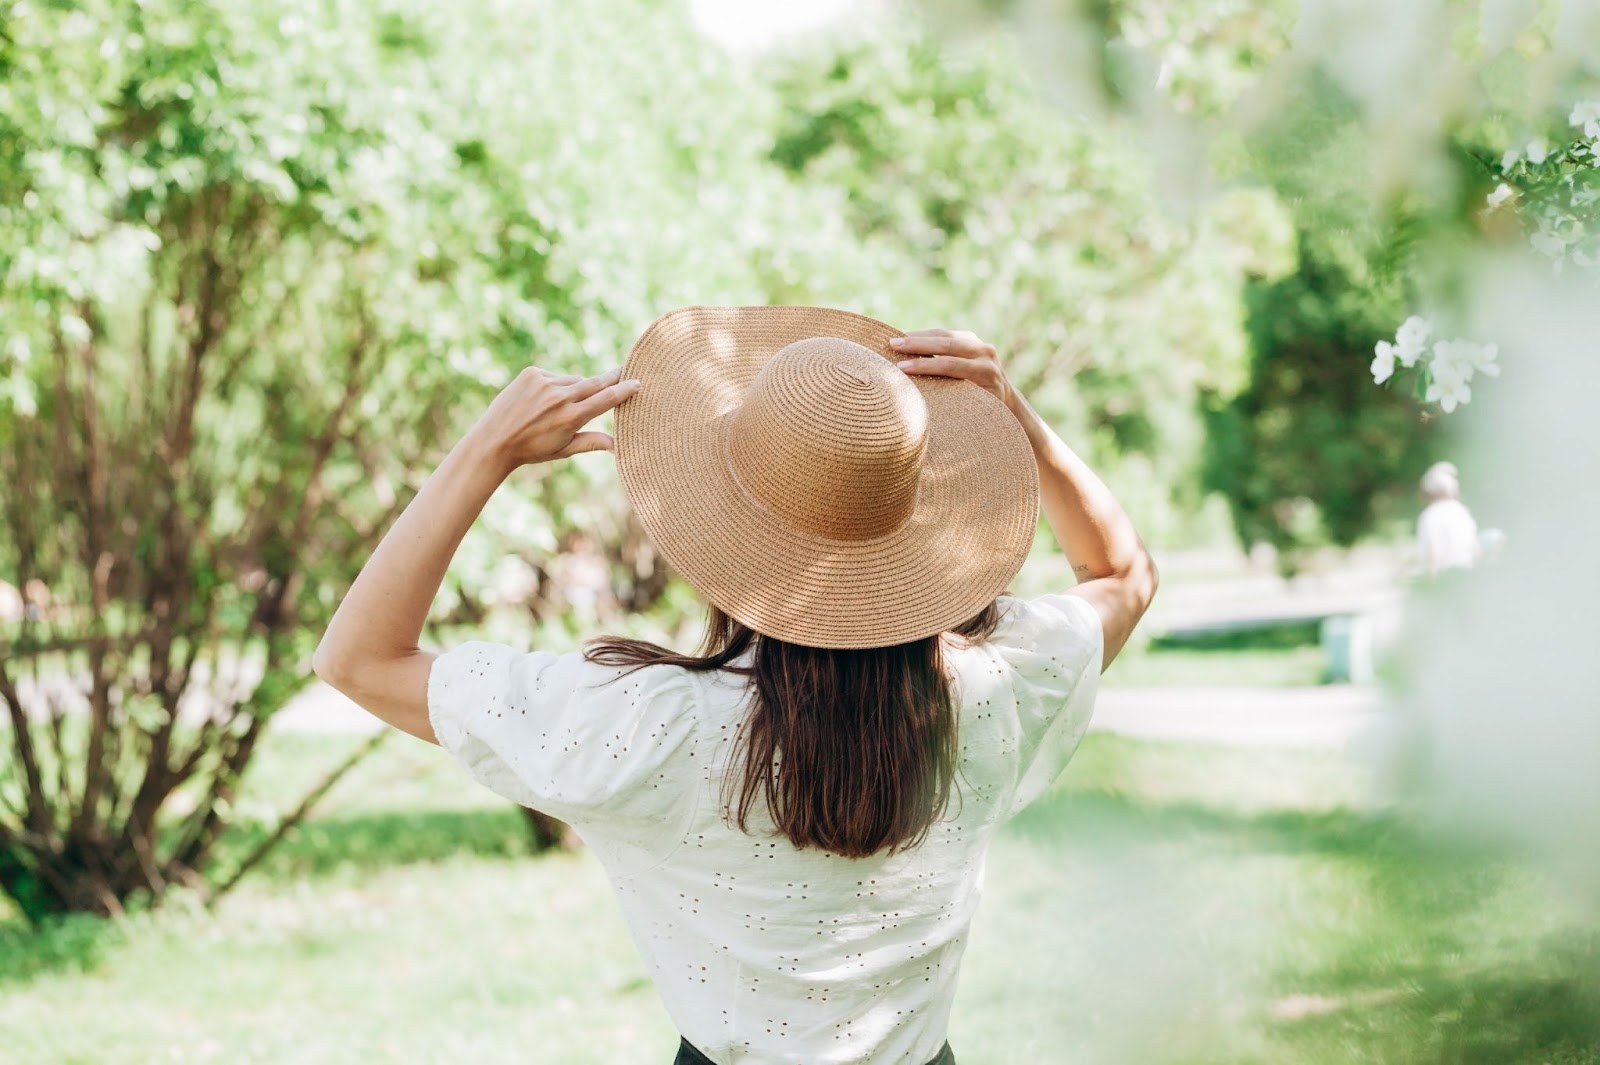 Mulher de costas com chapéu de palha e camiseta branca, observando as árvores e o gramado de um parque.